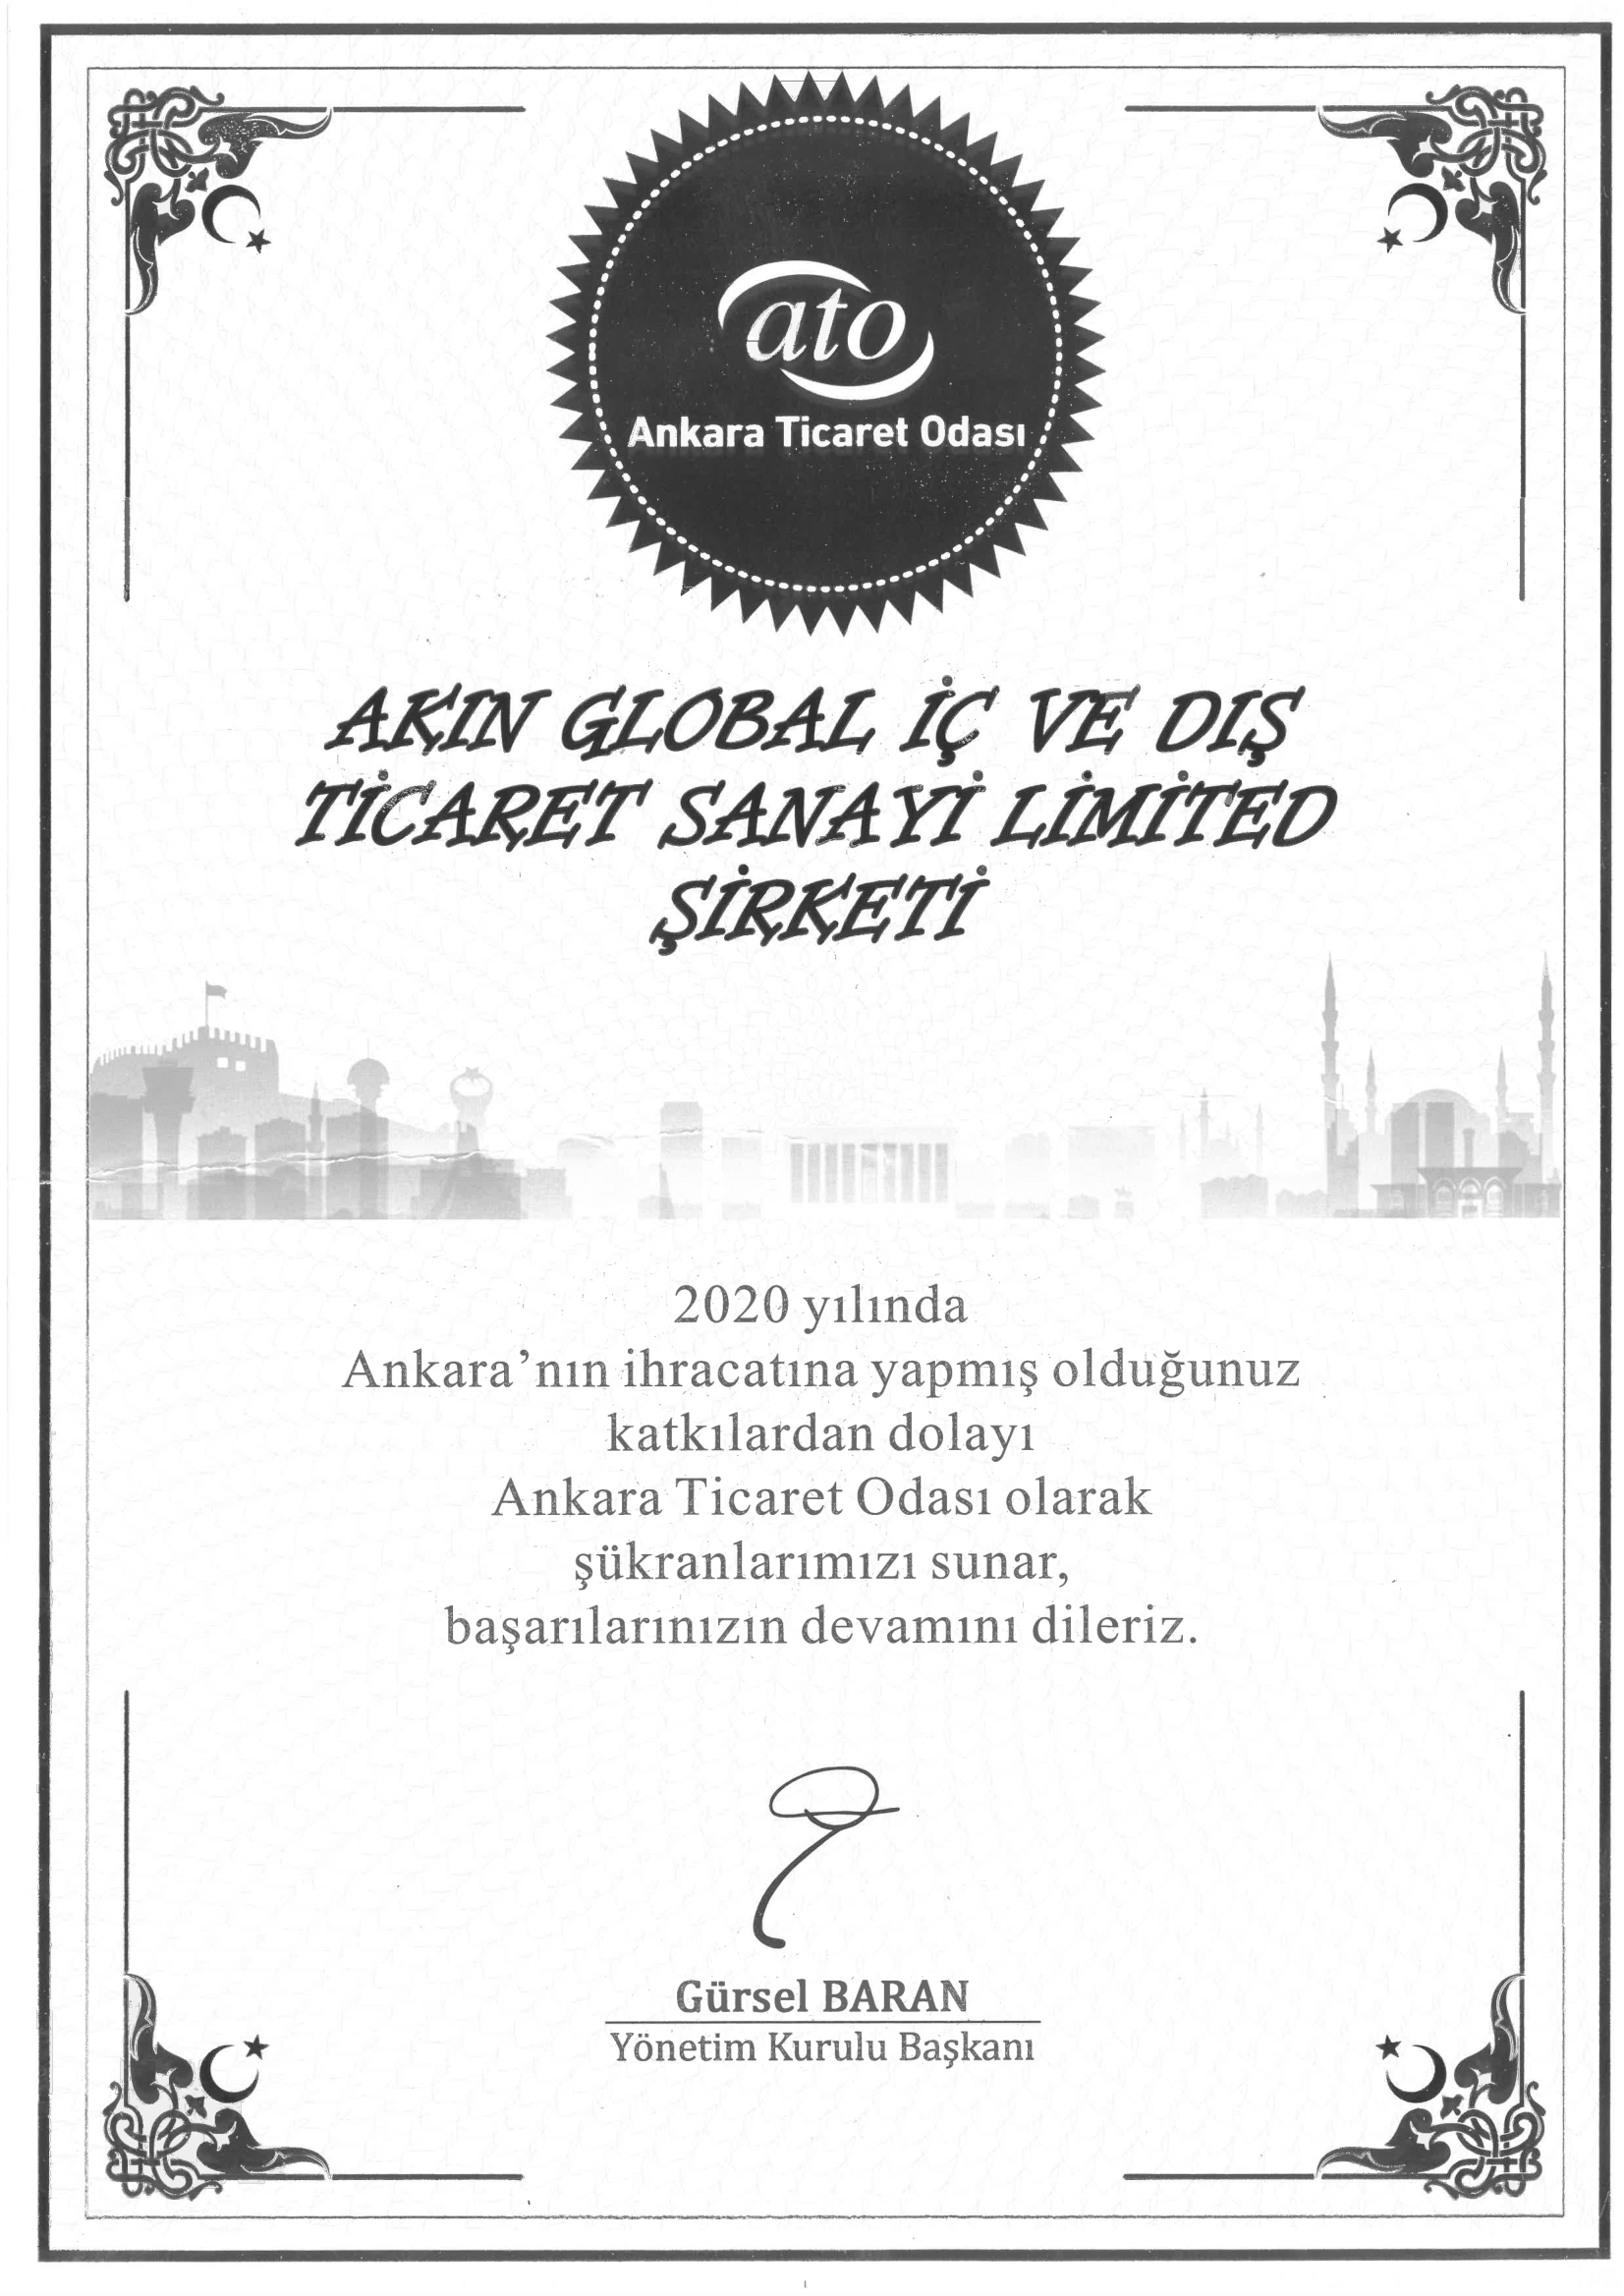 Ankara Ticaret Odası(ATO) tarafından ülke ihracatına katkılarımızdan dolayı verilen tebrik belgemiz.